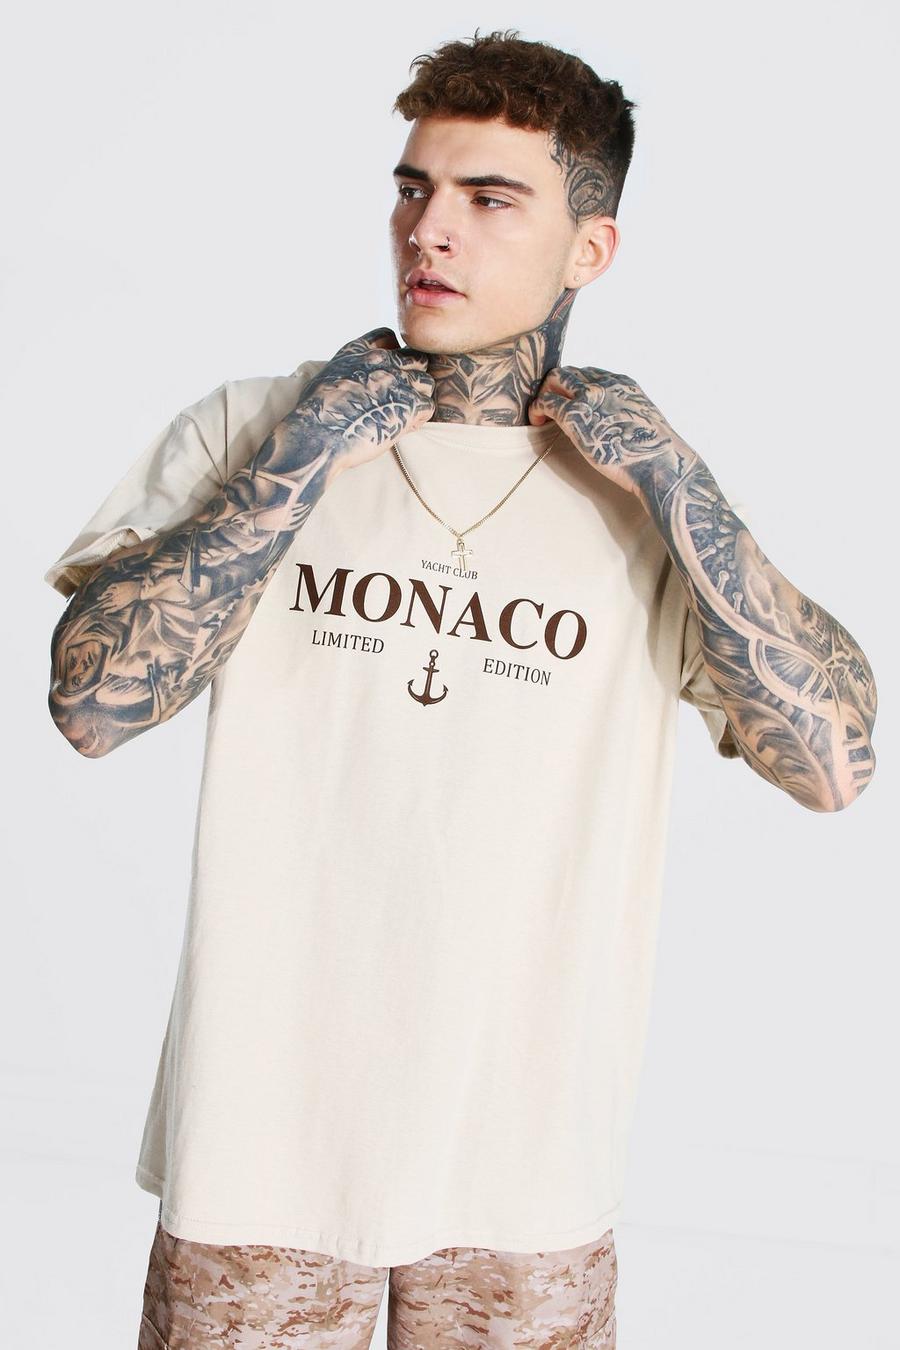 Opa Gestaag Beroep shirt box | Boohoo UK - Men's Oversized Monaco Limited Edition T - Vous ne  portez plus vos t-shirts de lan dernier